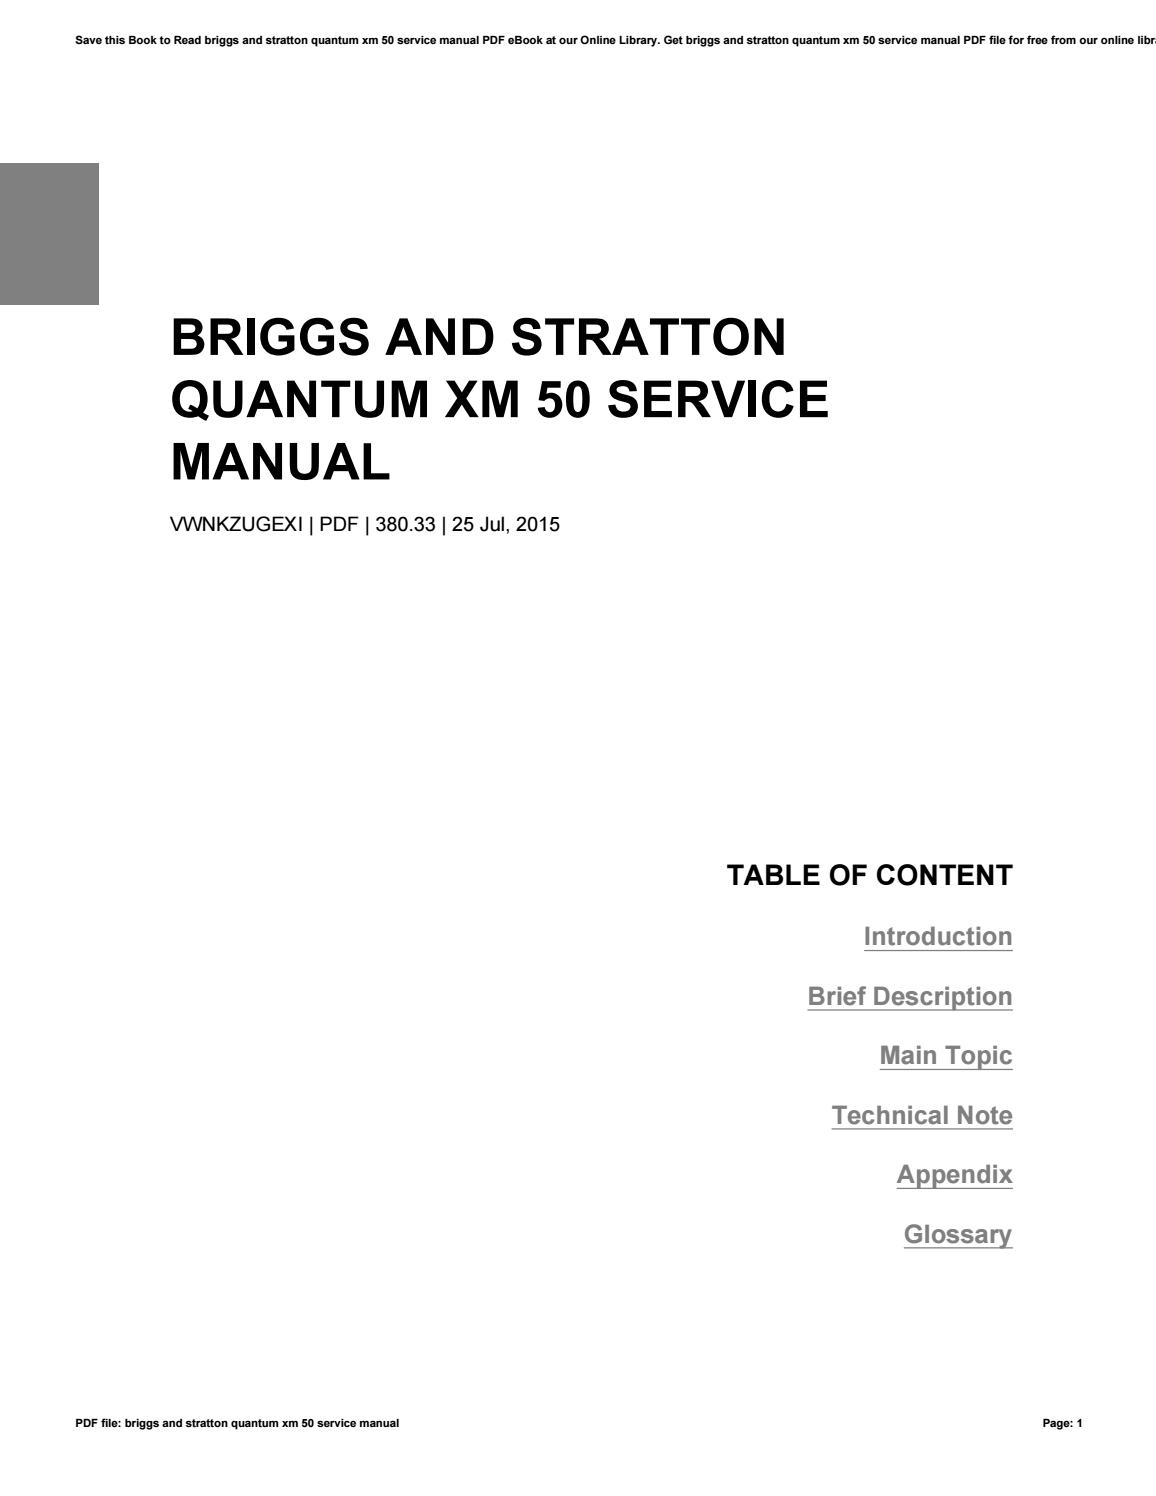 Briggs and stratton quantum 675 repair manual